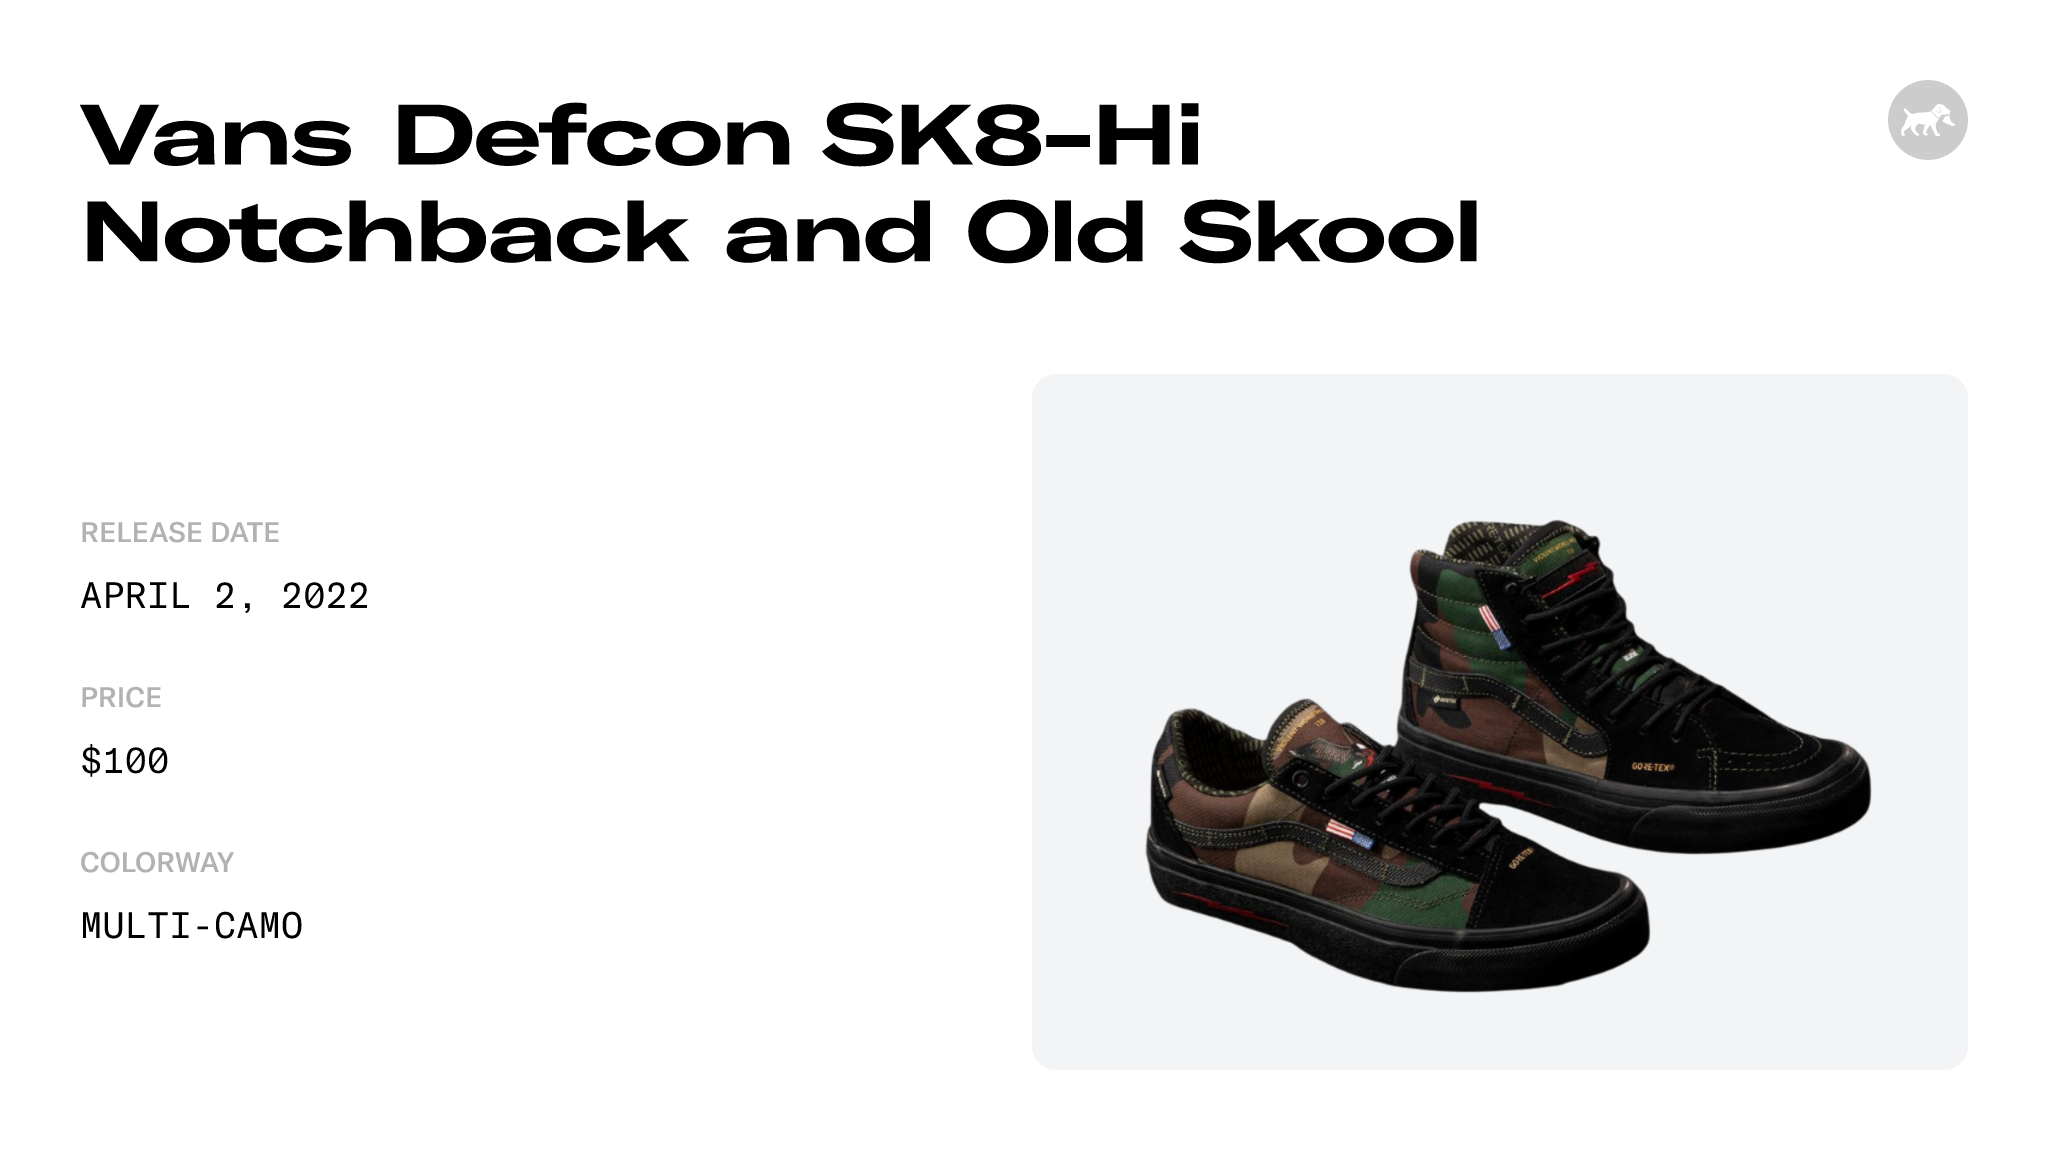 Vans Defcon SK8 Hi Notchback and Old Skool Raffles and Release